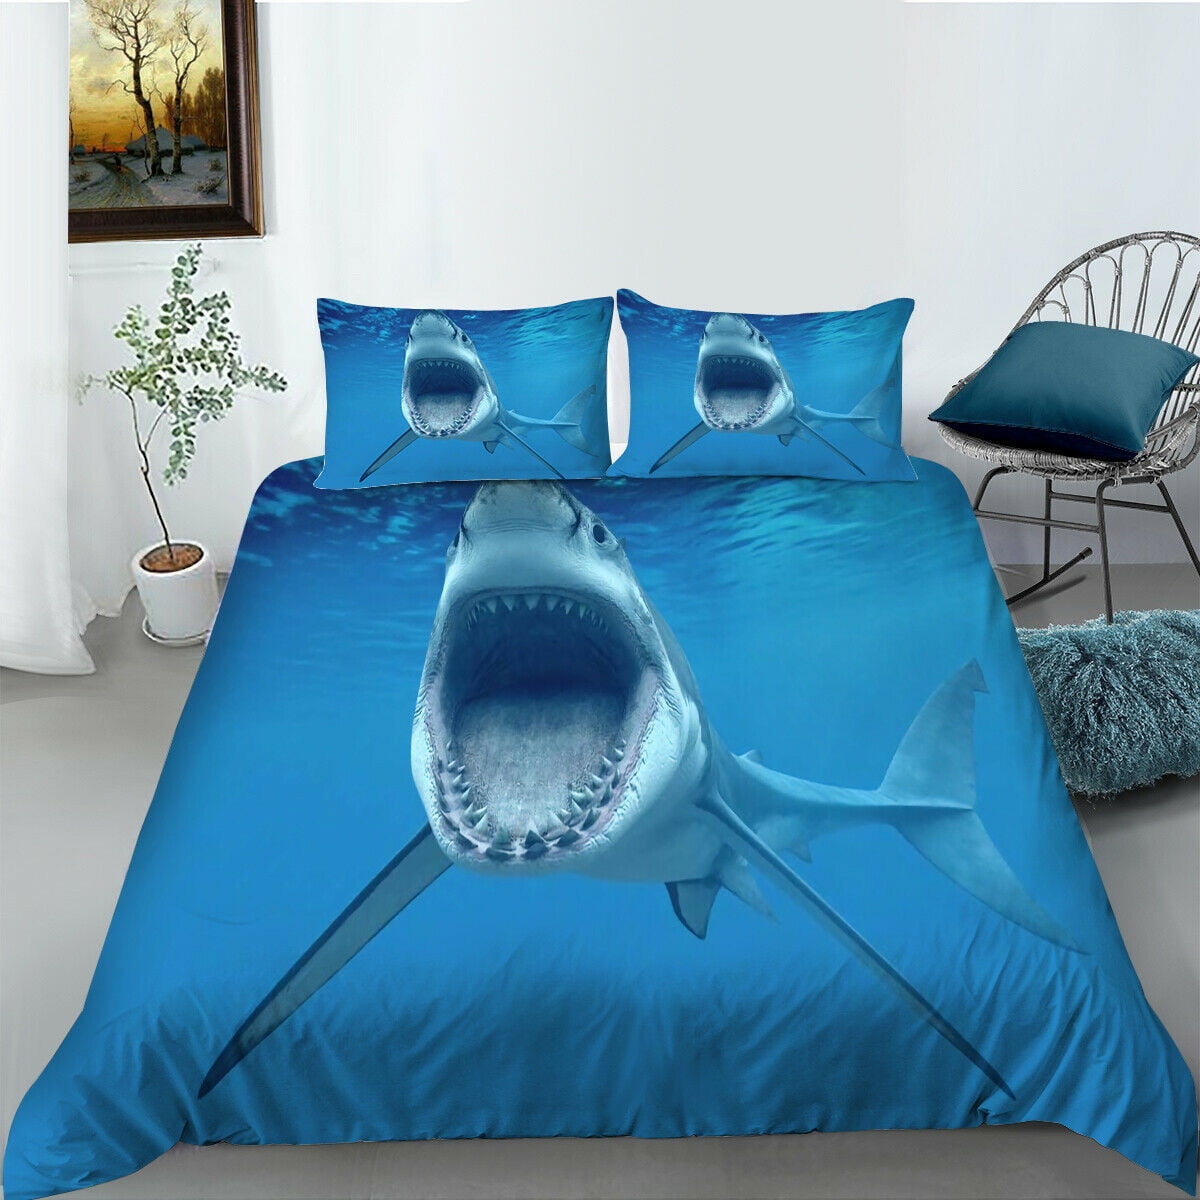 show original title Details about   3D Blue Graphic zhuc 4564 Bed Pillowcases Quilt Duvet Cover Set 